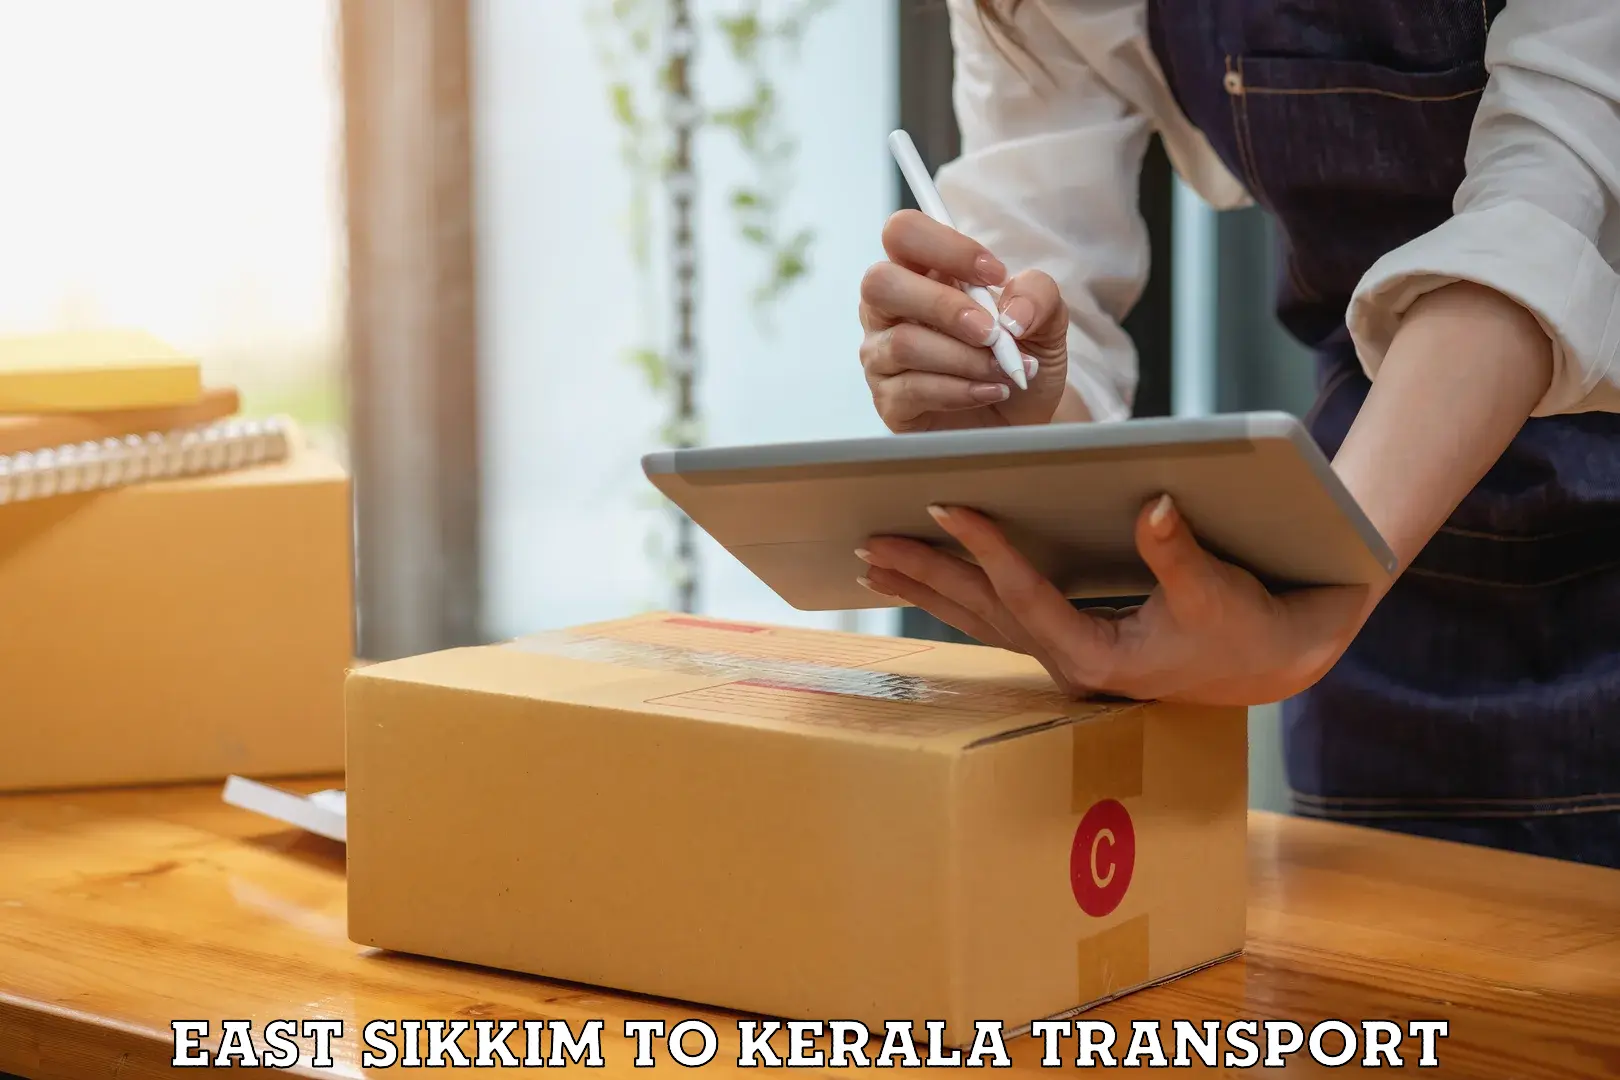 Online transport service East Sikkim to Kallikkad